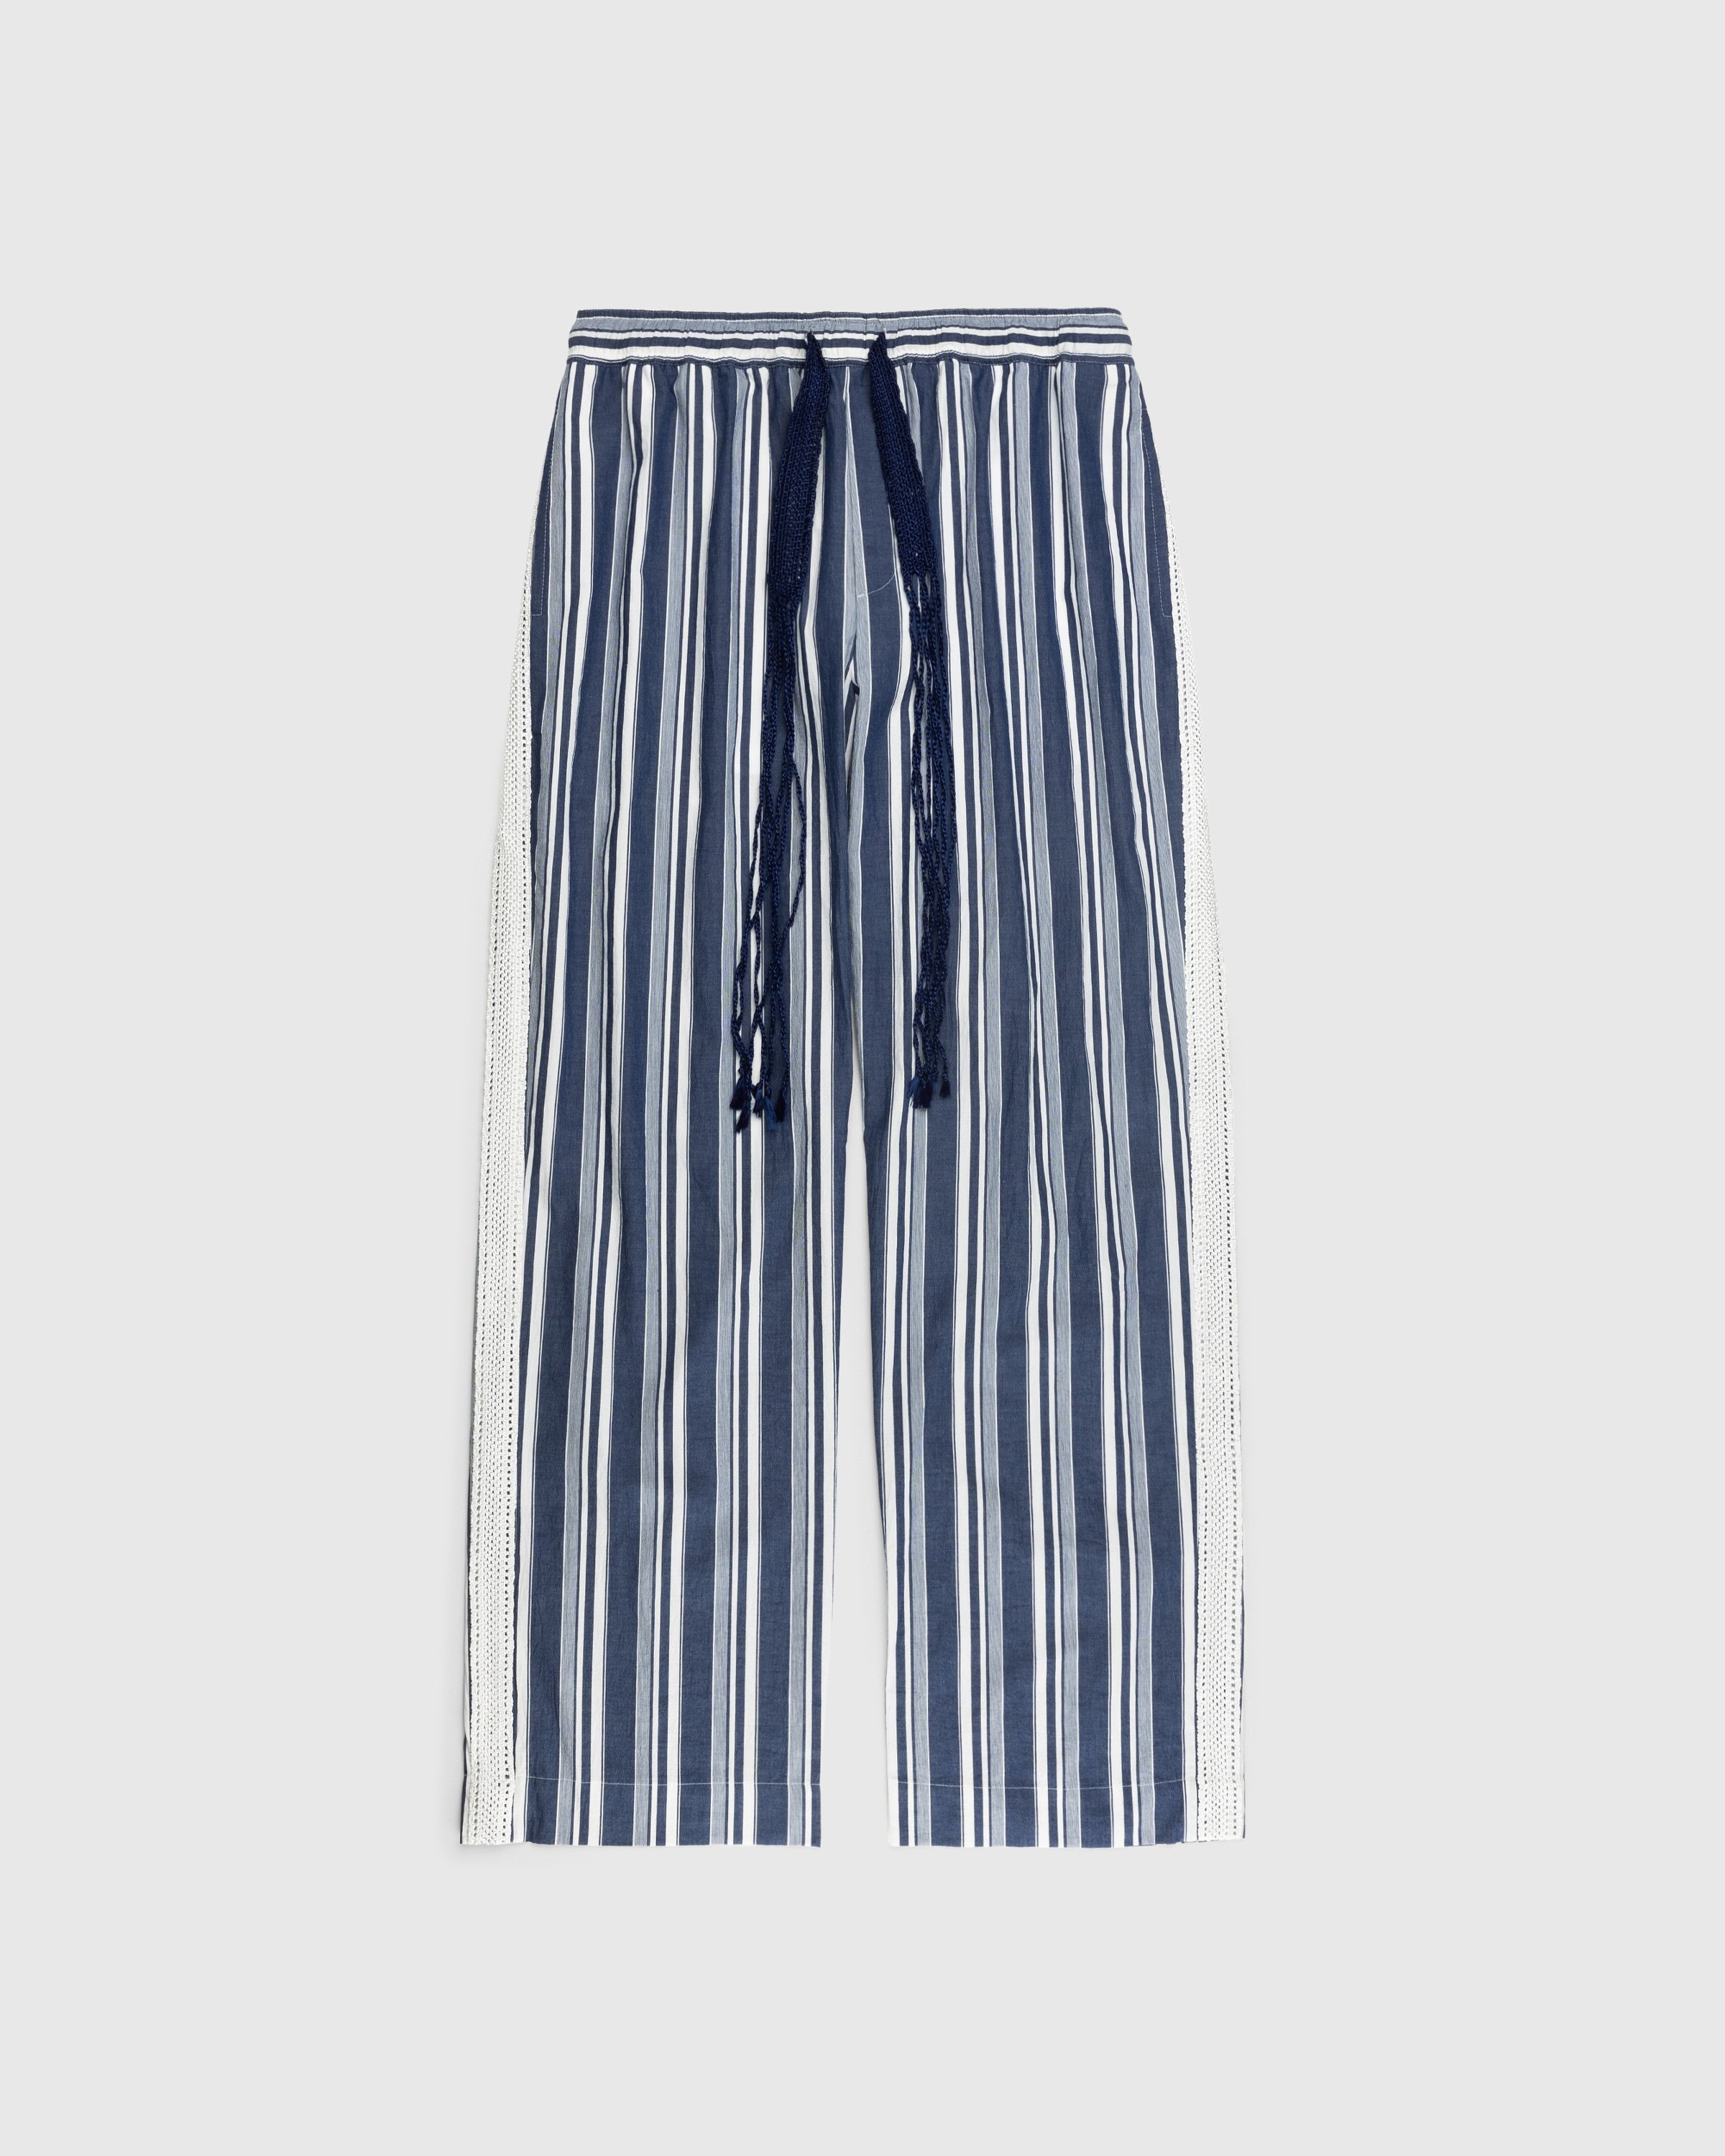 Wales Bonner – Soul Pyjama Trousers - Loungewear - Blue - Image 1